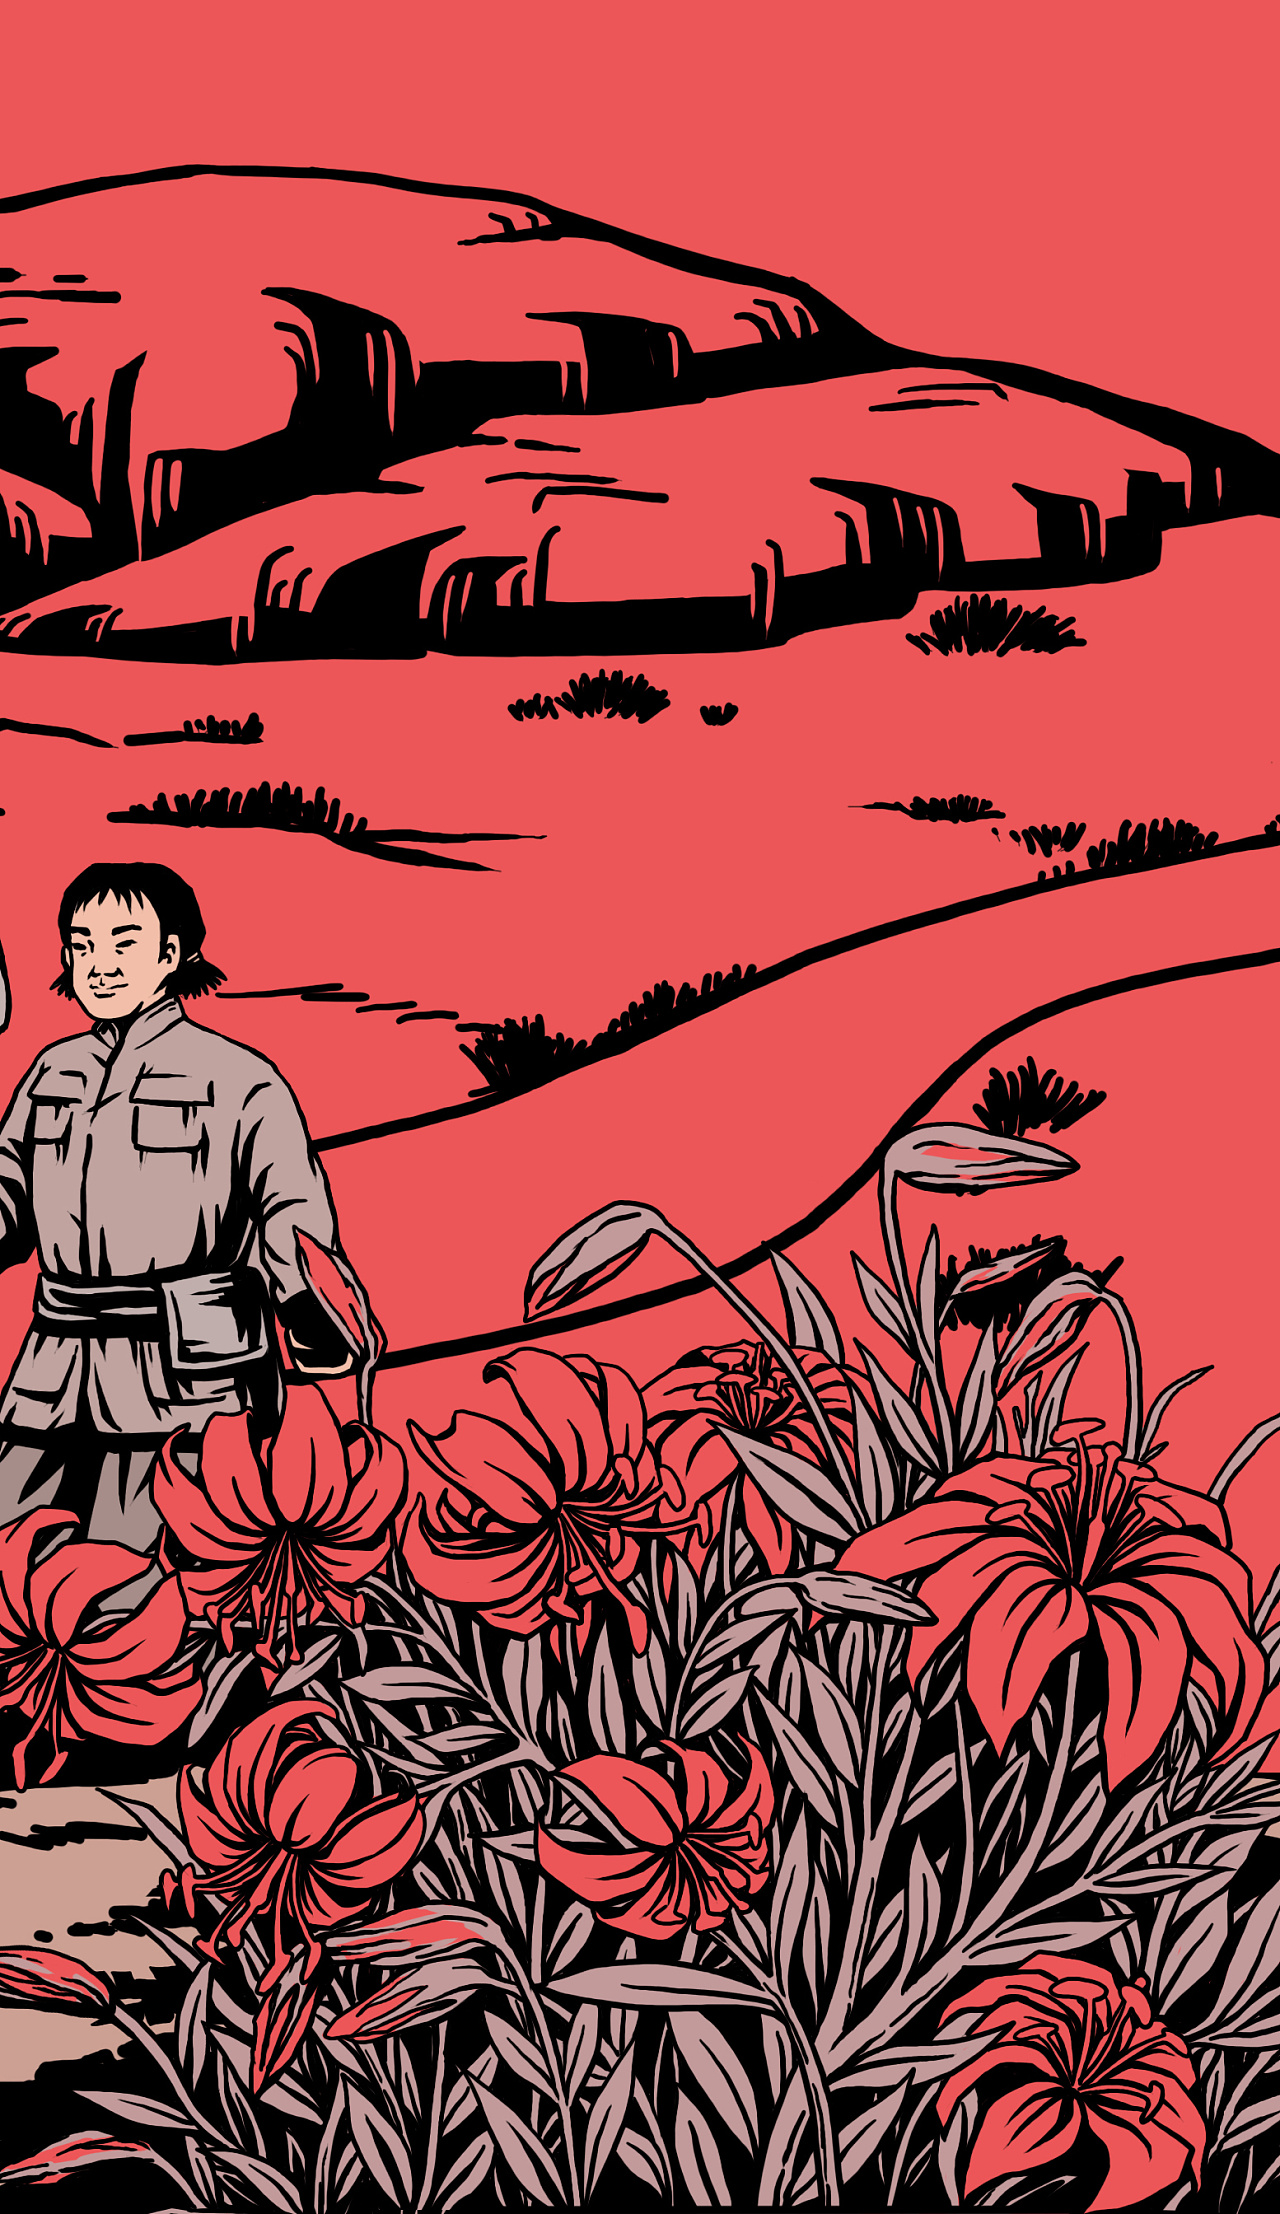 红色革命烈士纪念海报插画图片素材免费下载 - 觅知网